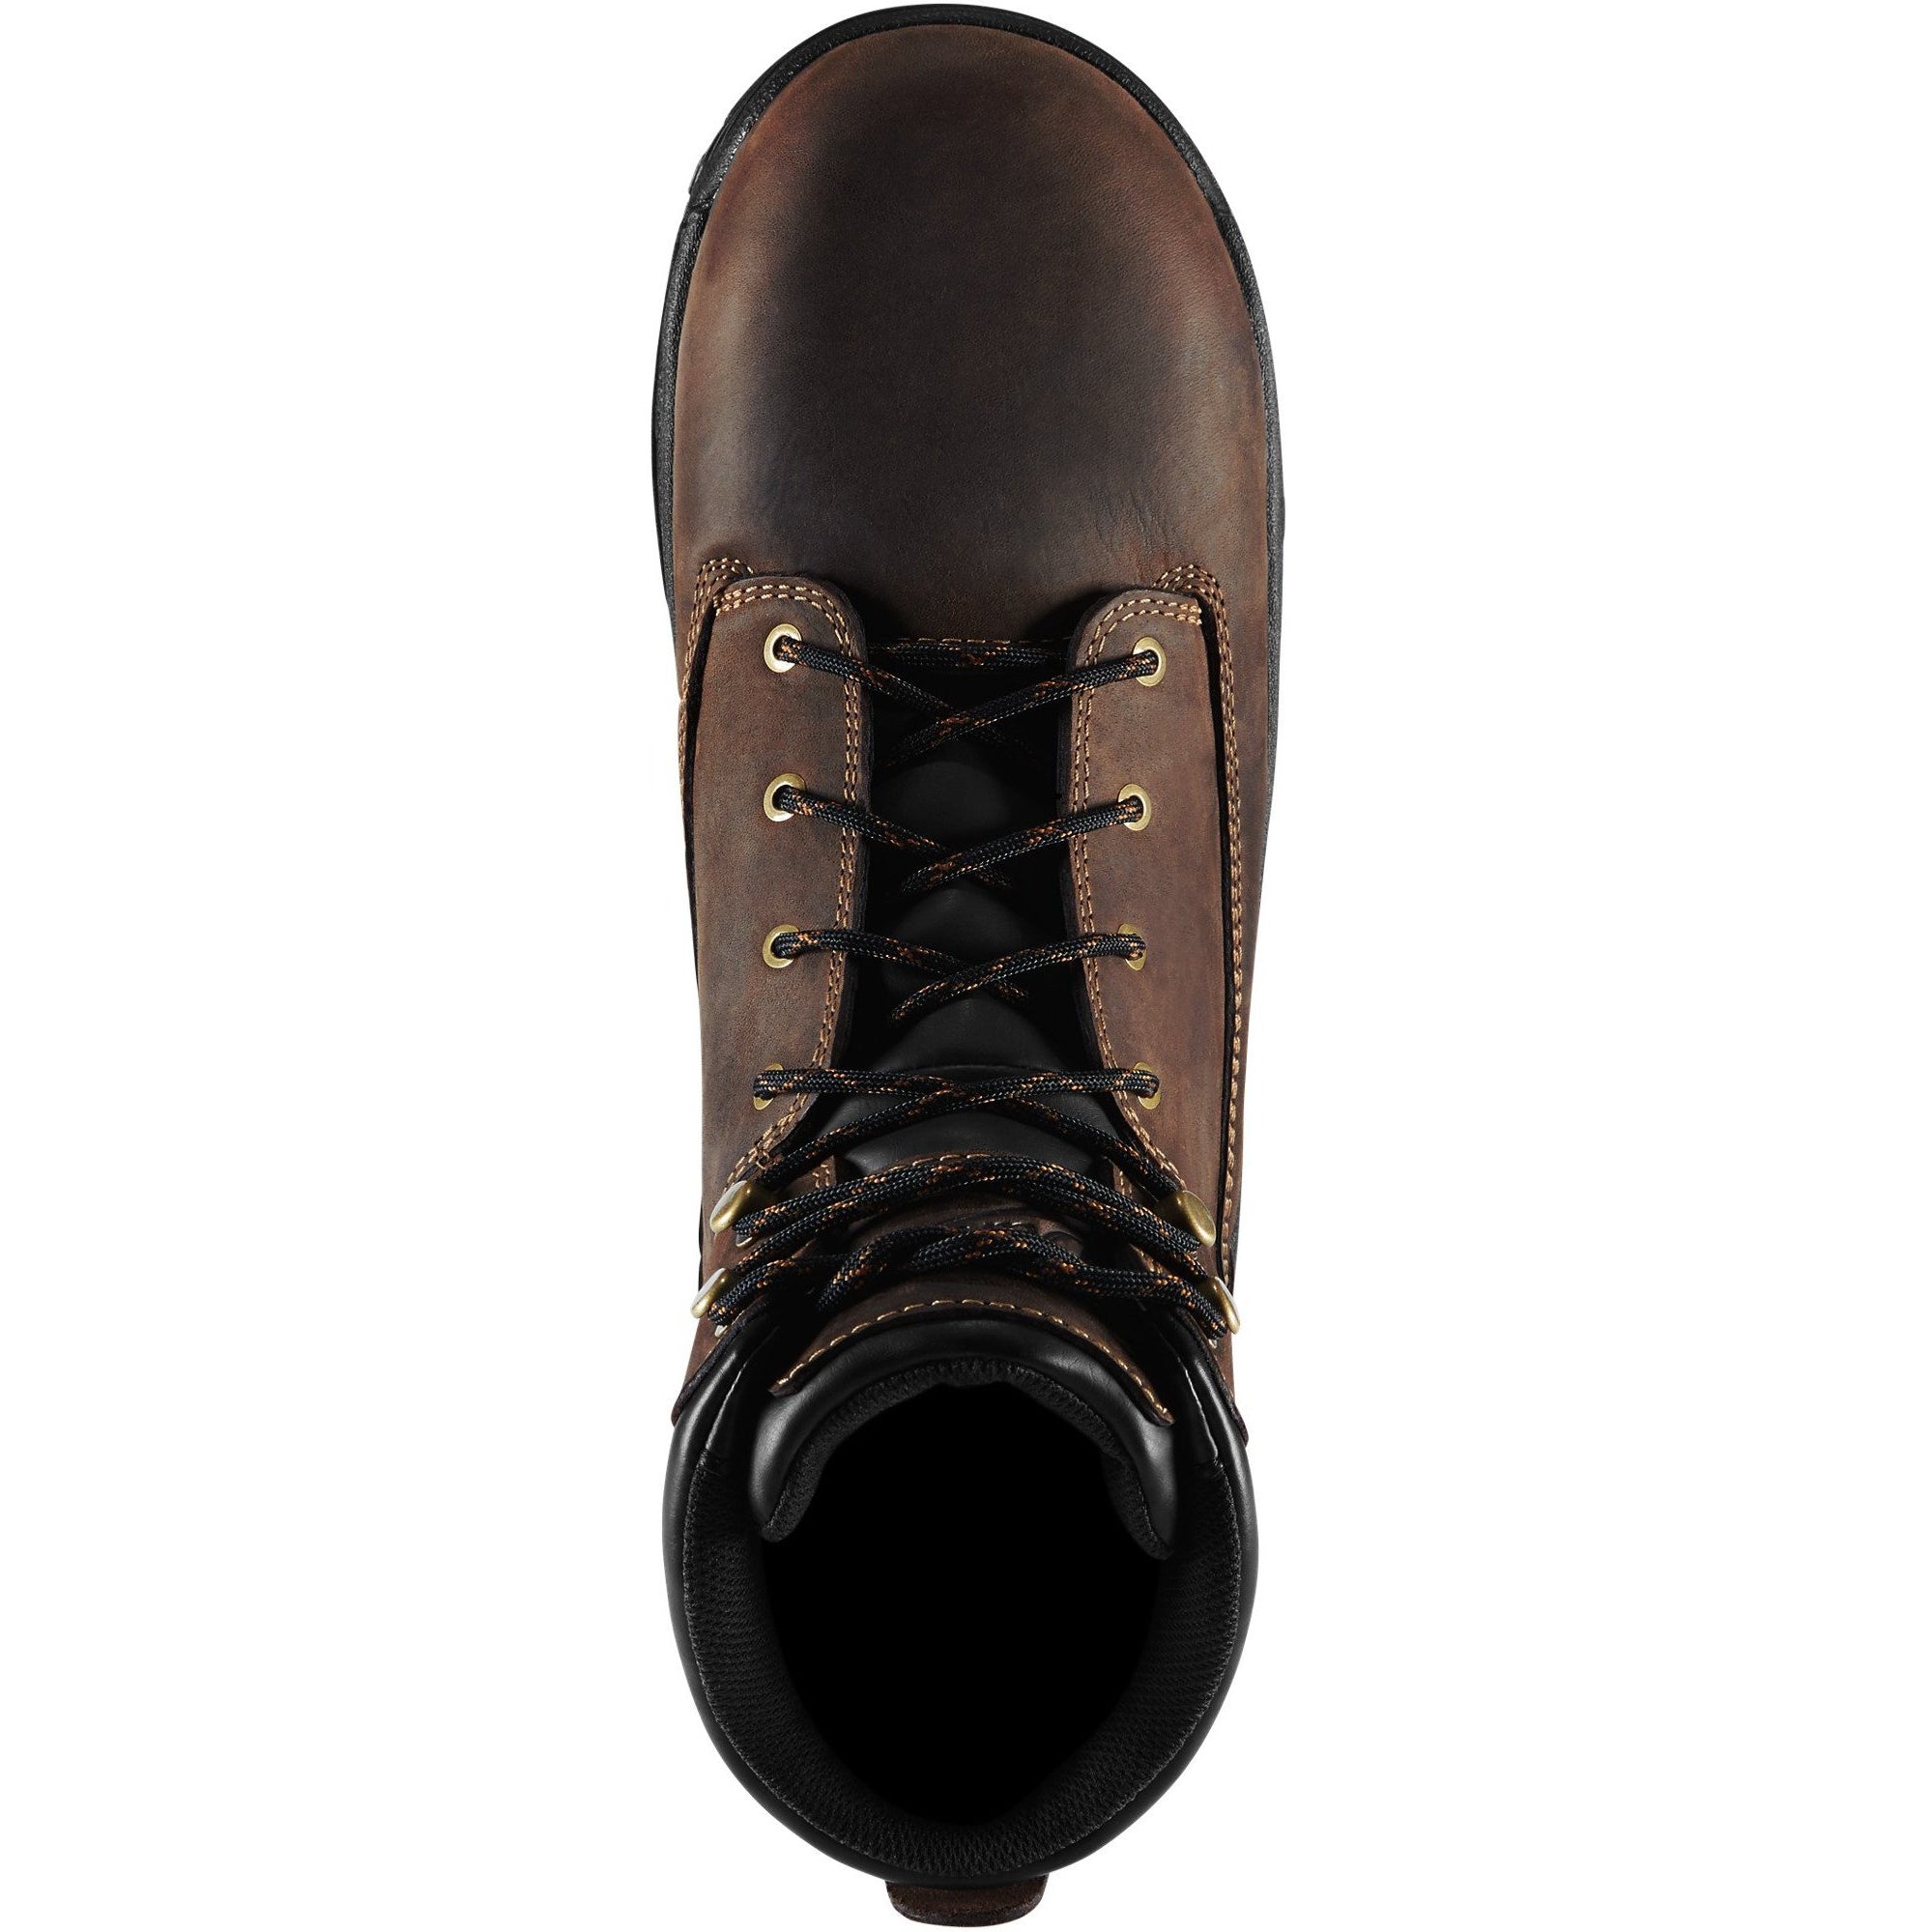 Danner Men's Caliper 6" Soft Toe WP Work Boot - Brown - 19452  - Overlook Boots